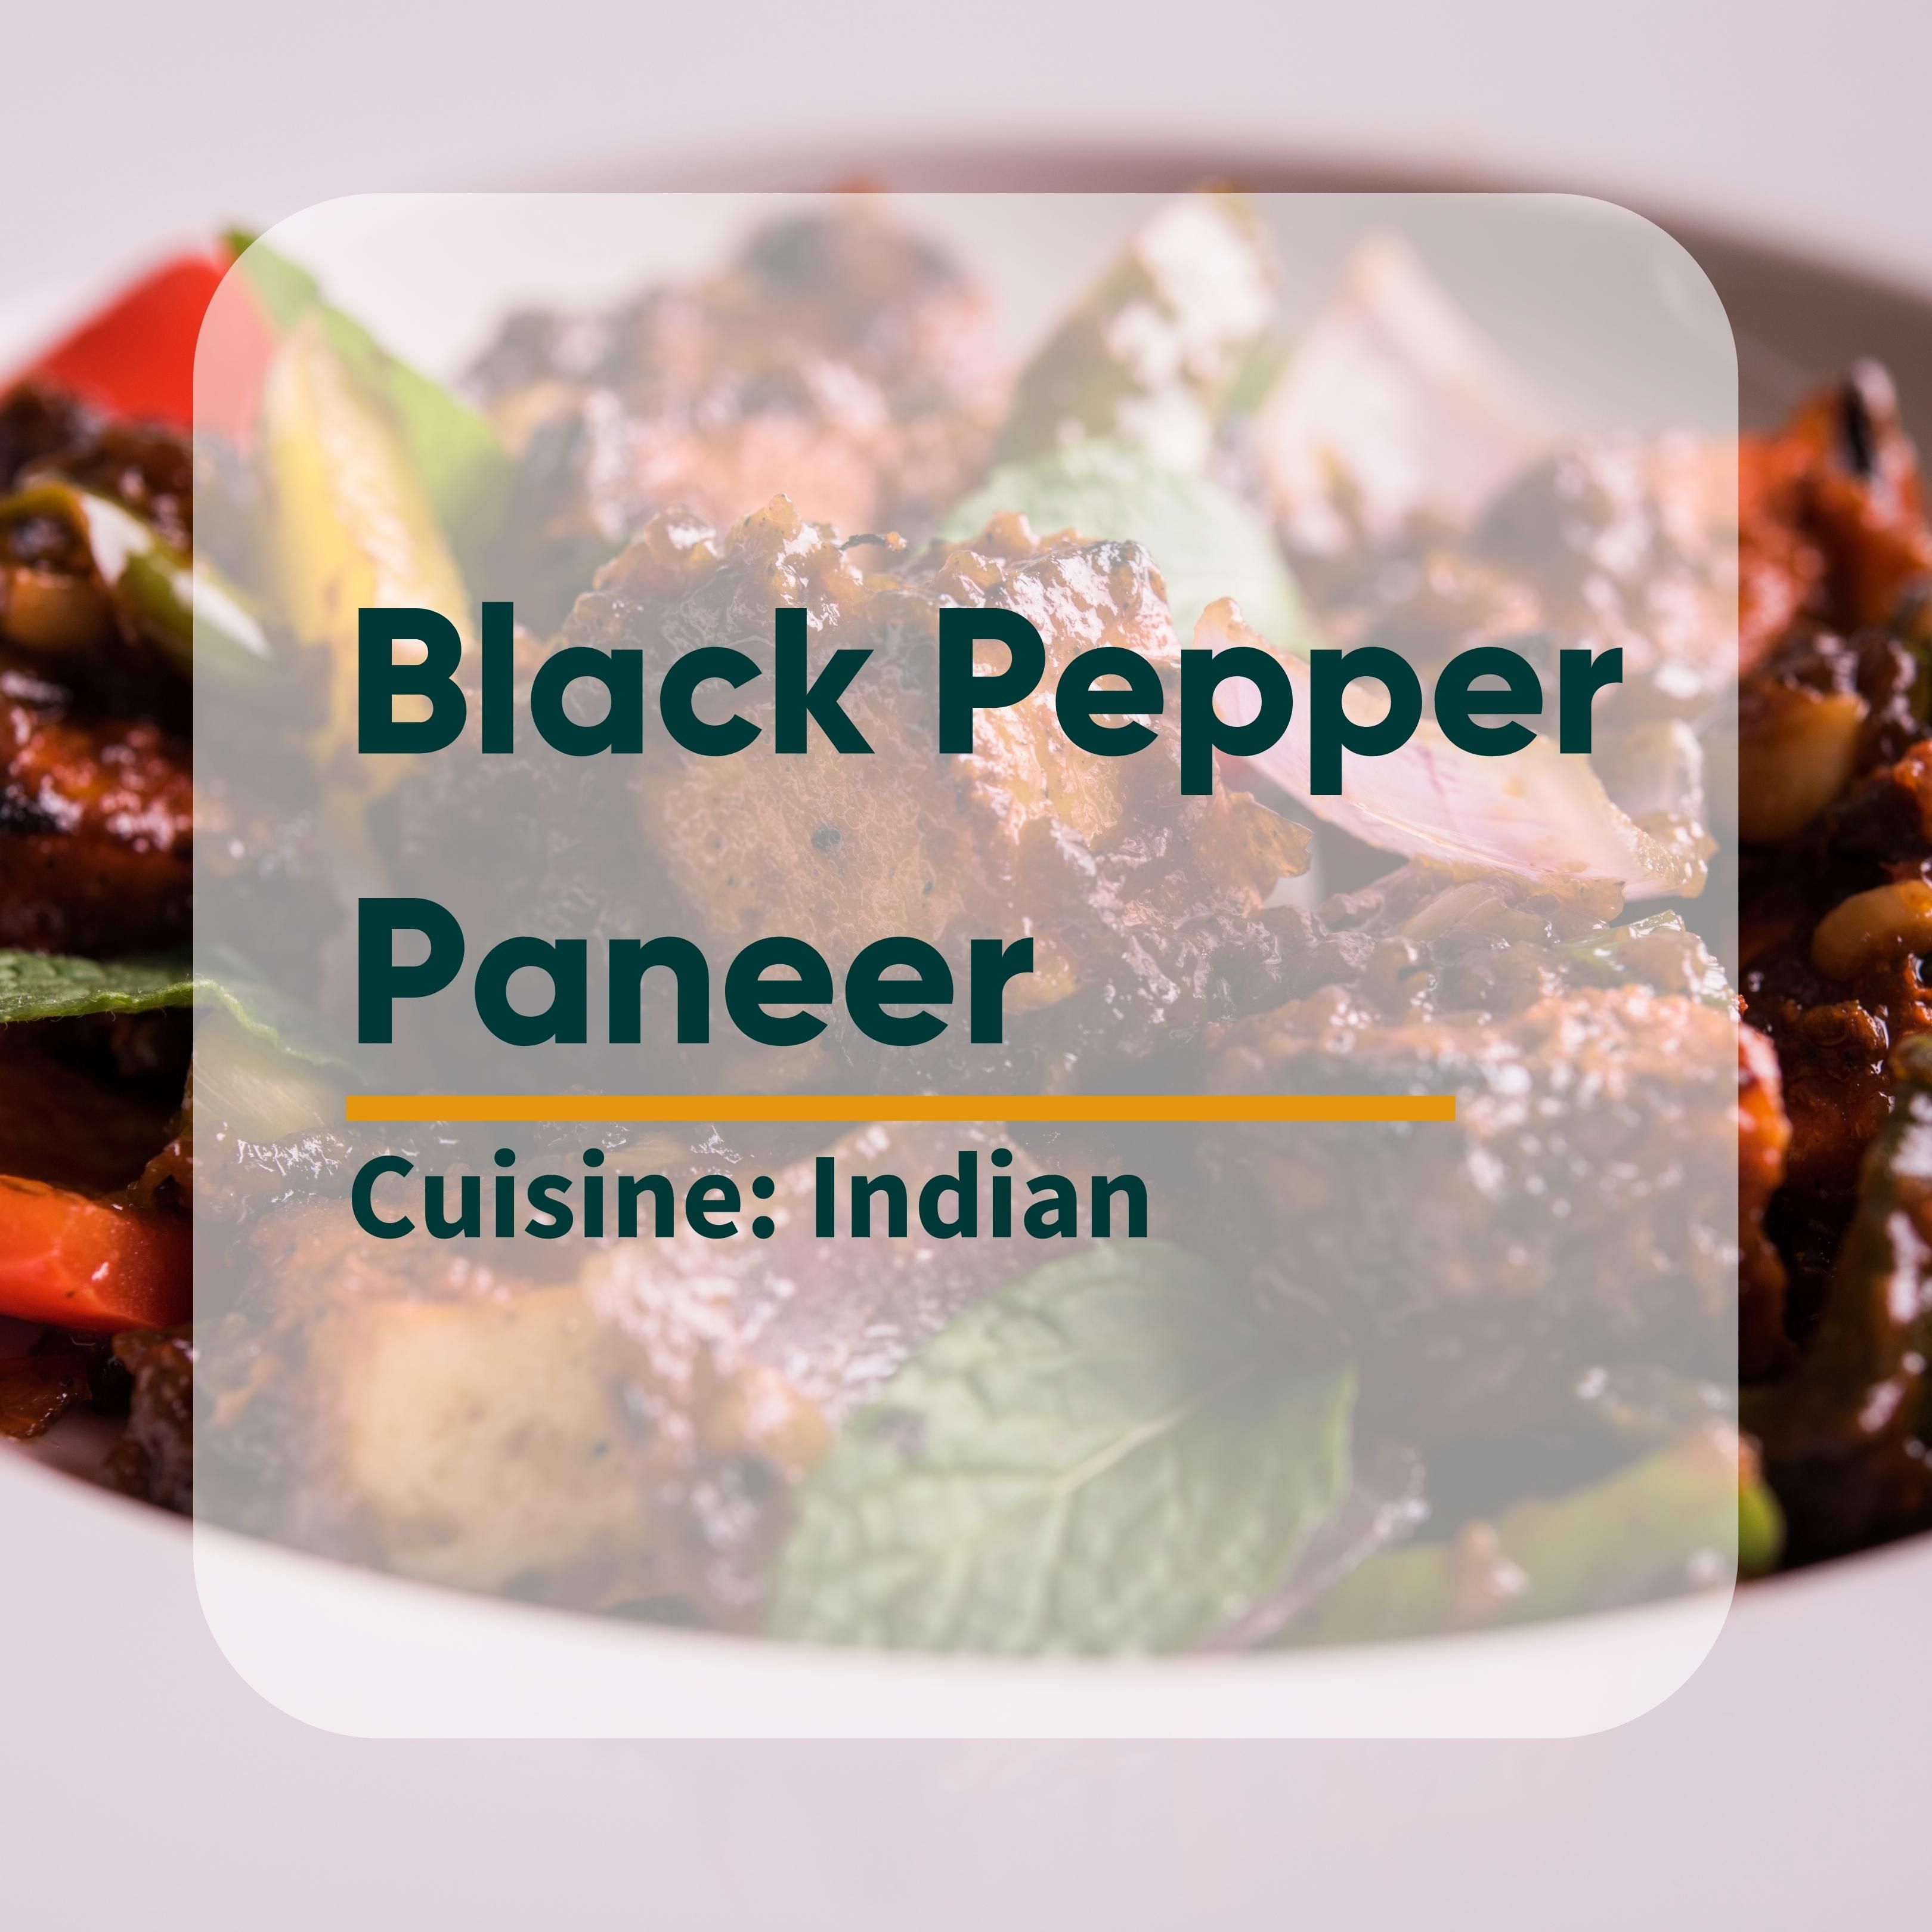 Black Pepper Paneer Image